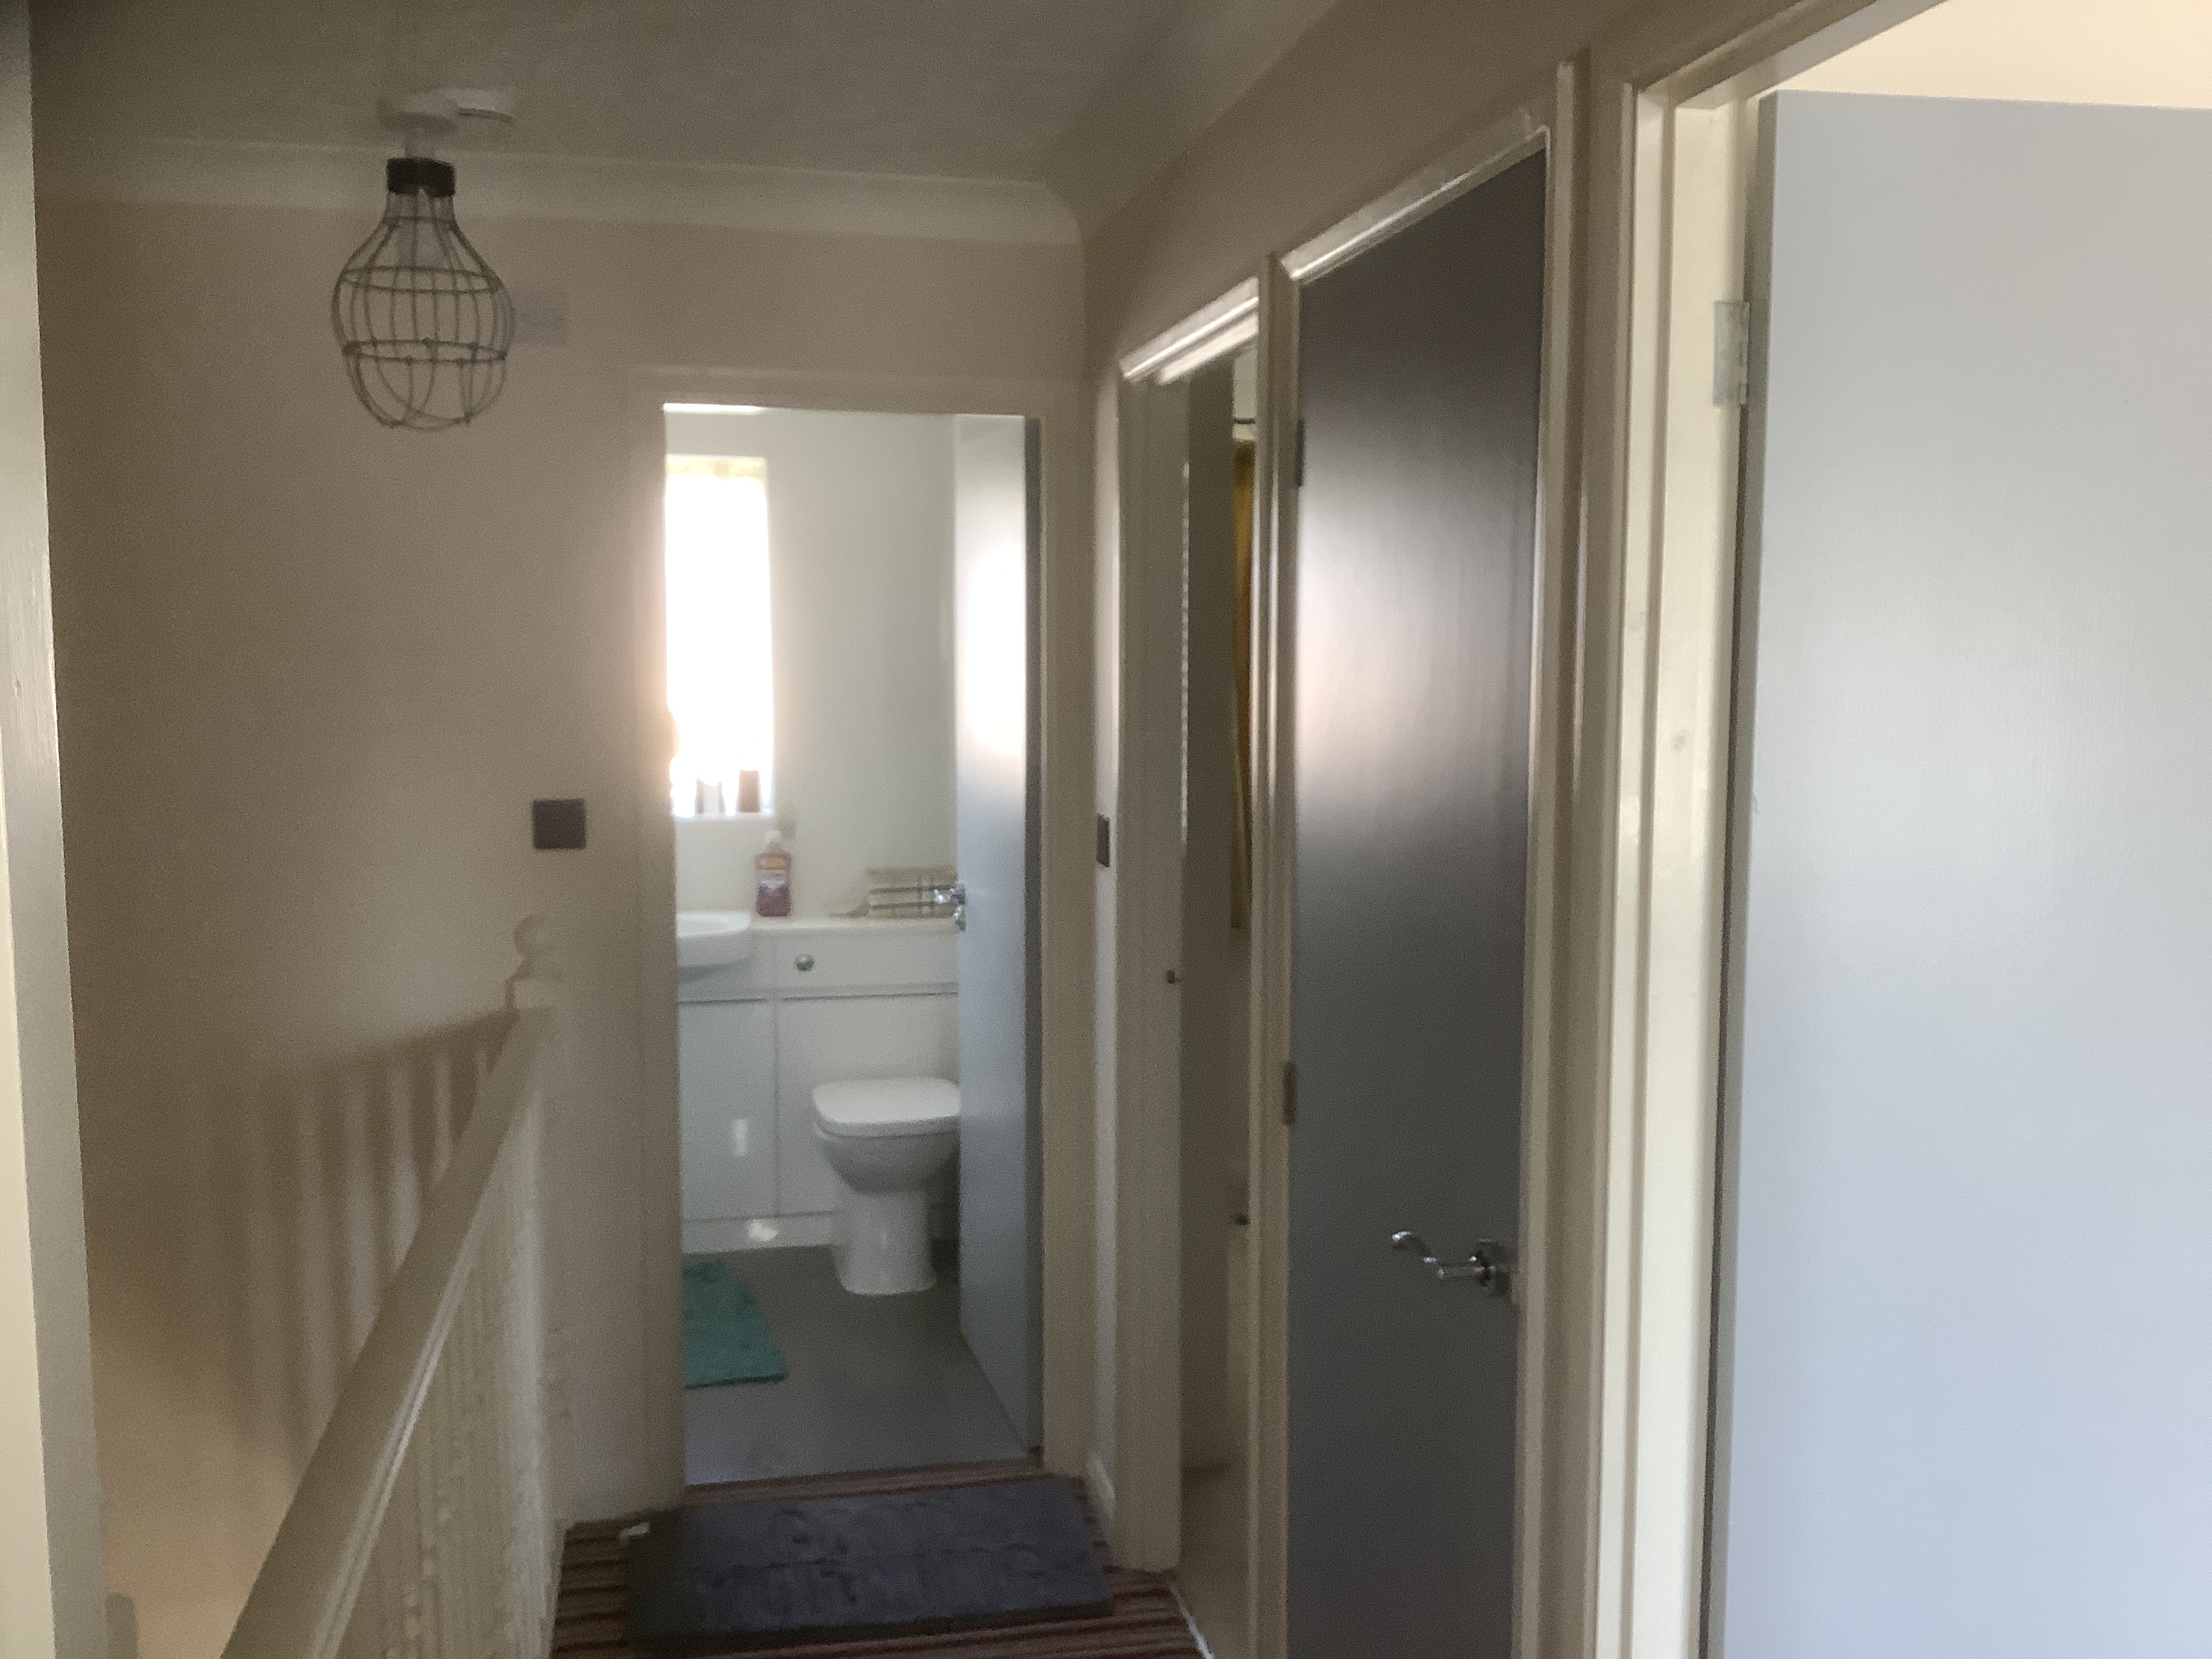 3 Bedroom Detached to rent in Folkestone - Mashroom